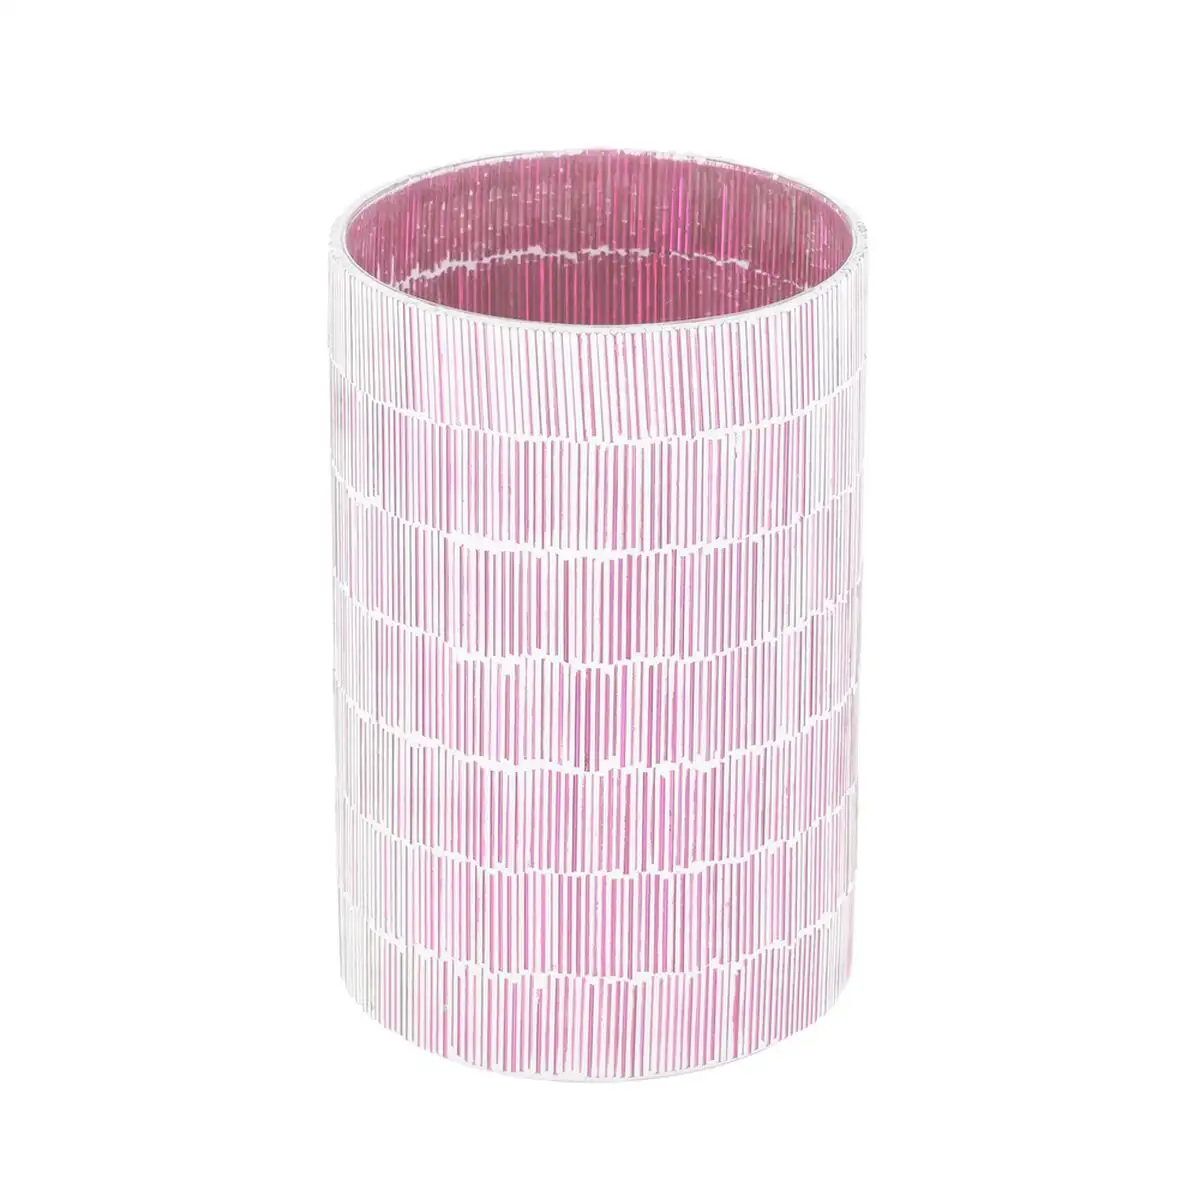 Bougeoir rose verre ciment 13 x 13 x 20 cm_6962. DIAYTAR SENEGAL - L'Art de Vivre l'Élégance Accessible. Parcourez notre gamme variée et choisissez des produits qui ajoutent une touche de sophistication à votre style.